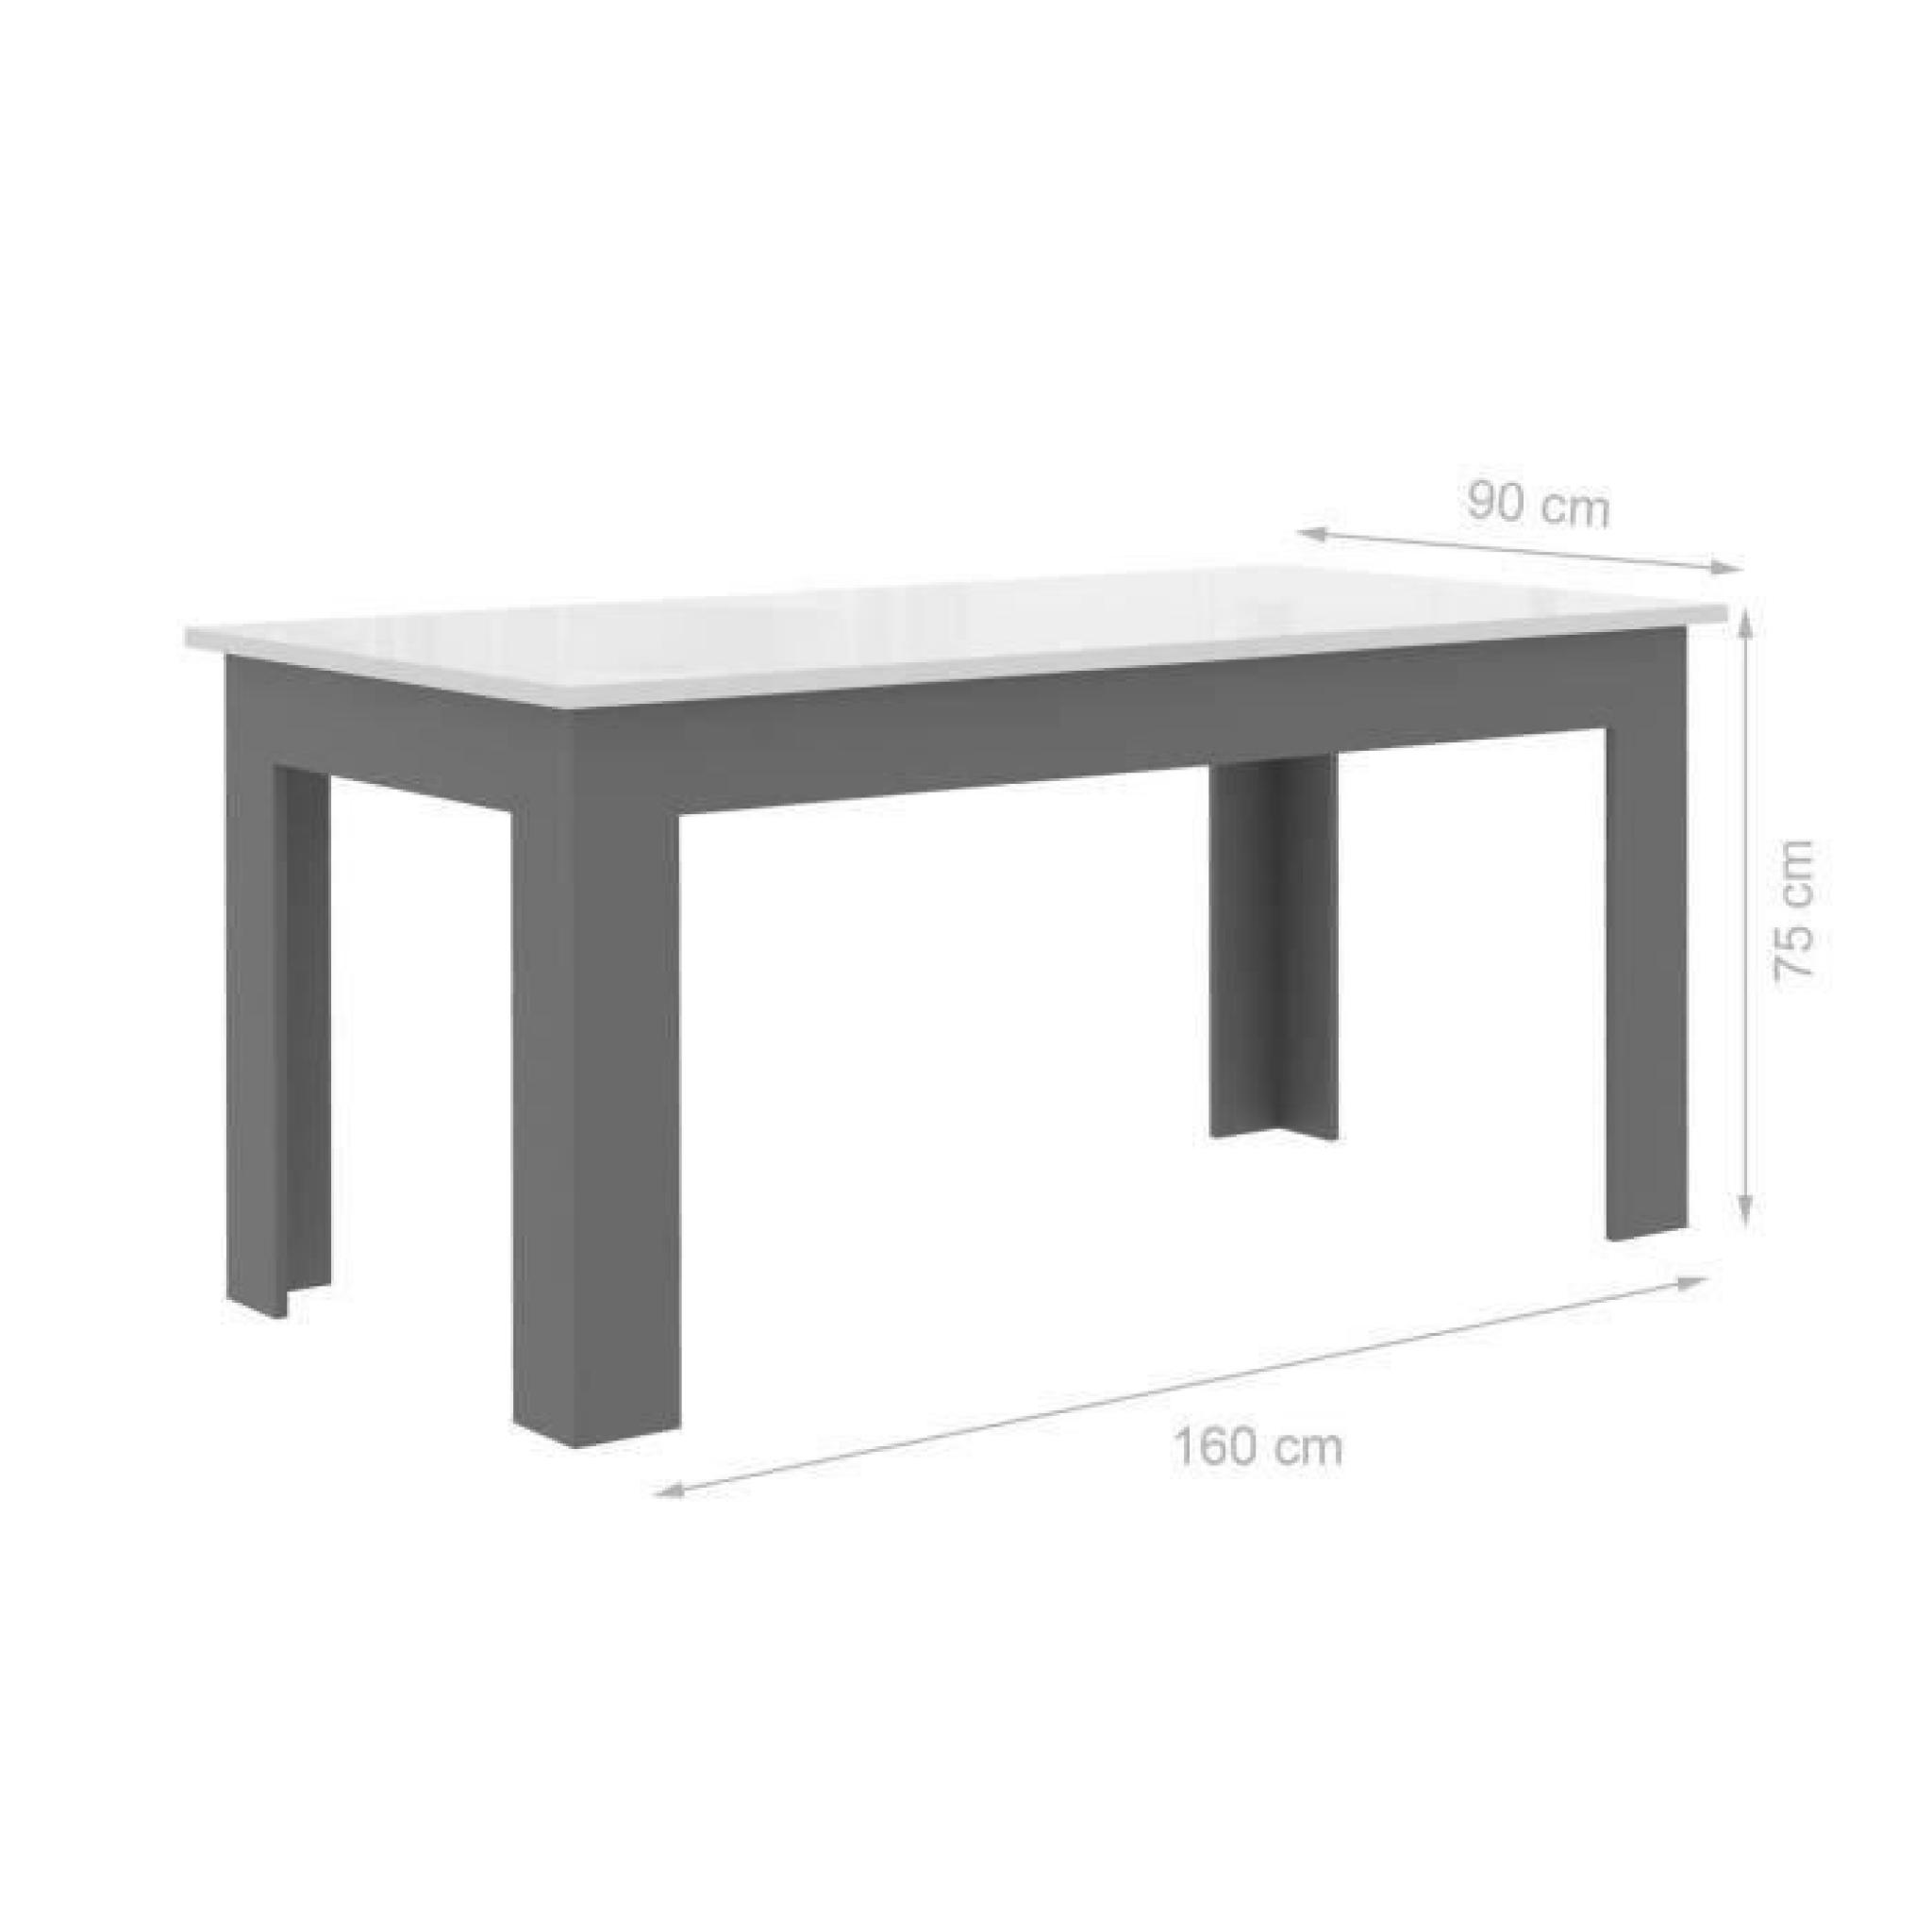 FINLANDEK Table à manger PILVI 160x90cm blanc et gris pas cher